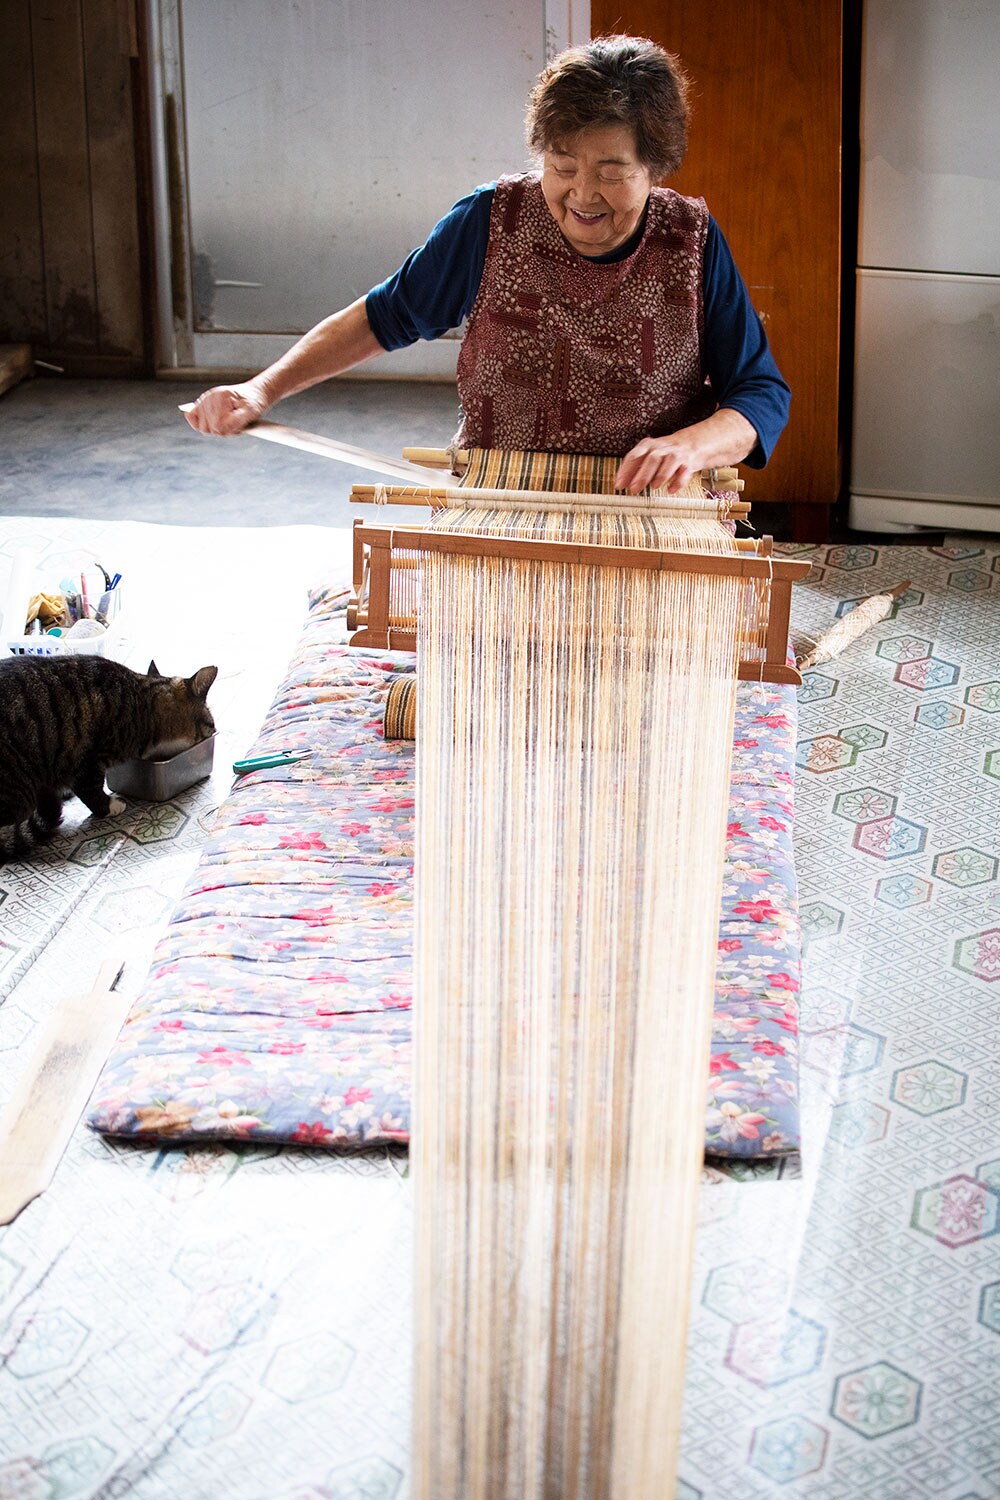 子どものころからアットゥシ織りに関わり続け、「糸に触れているときがいちばん楽しい」と語る貝澤雪子さん。機織りをするそばには愛猫のハナちゃんが。先日は貴重な伝統文化の継承に貢献した人物に贈られる「伝統文化ポーラ賞」を受賞した。